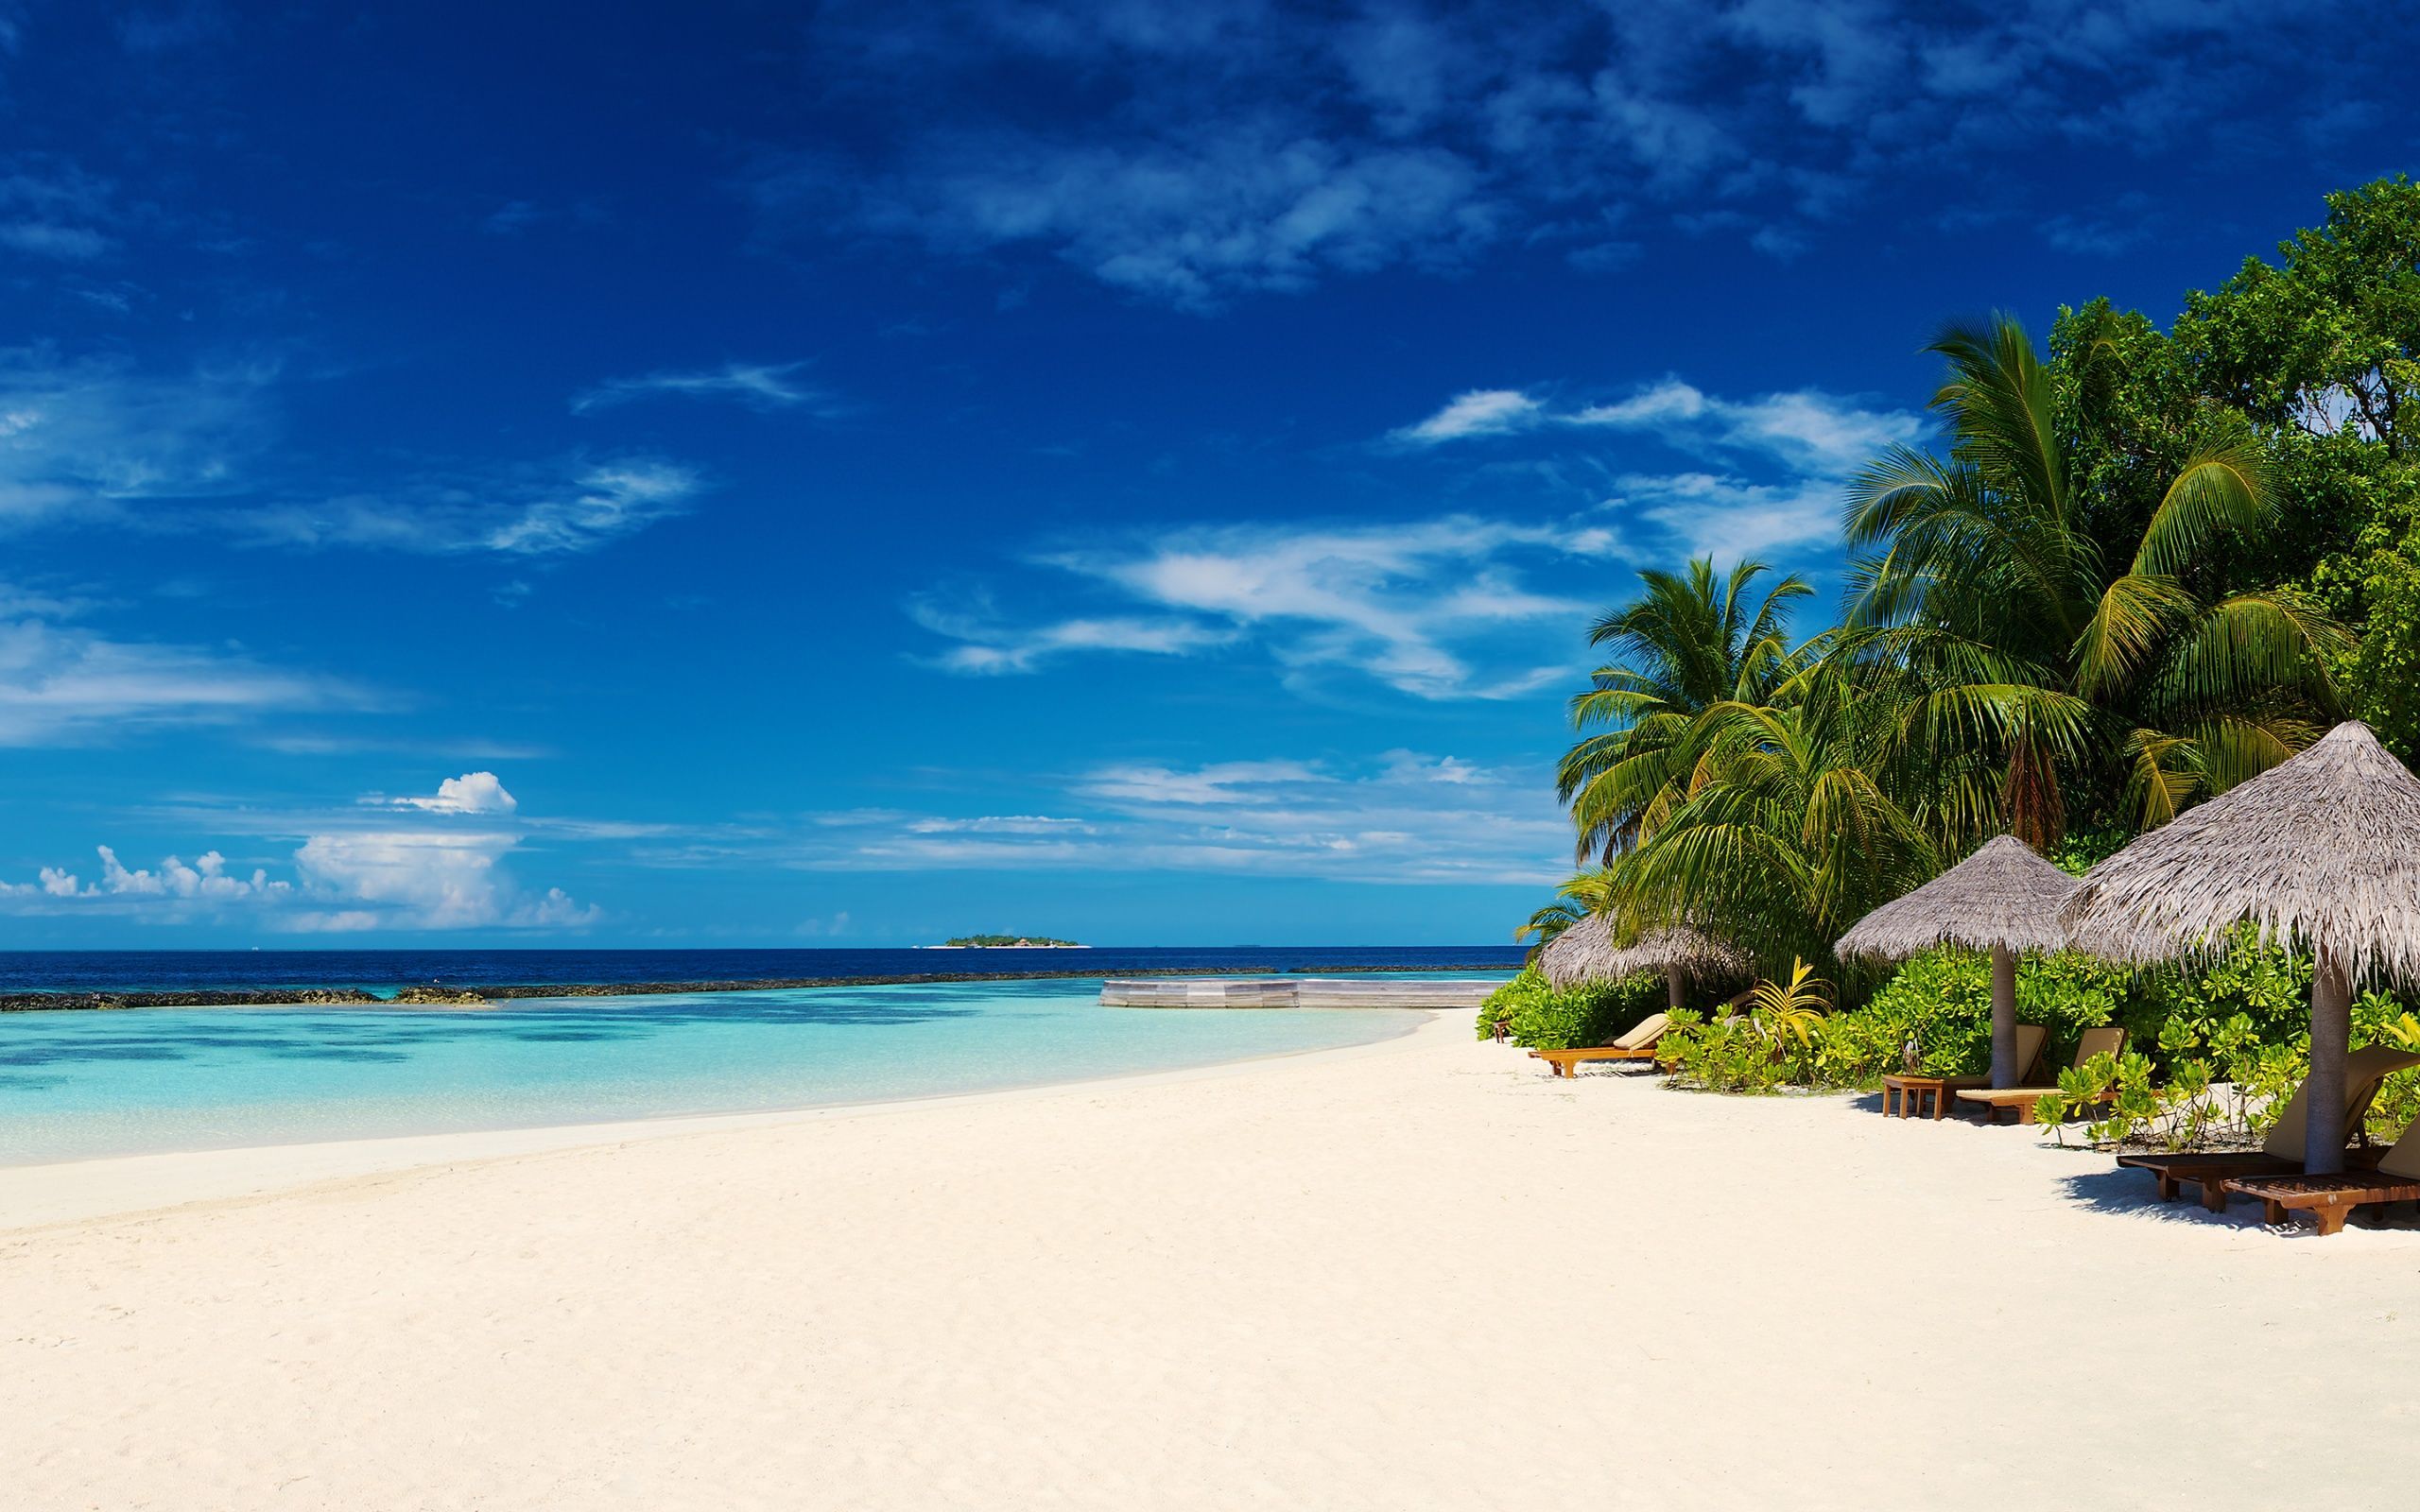 Maldives holidays, Maldives resorts, Maldives honeymoon packages